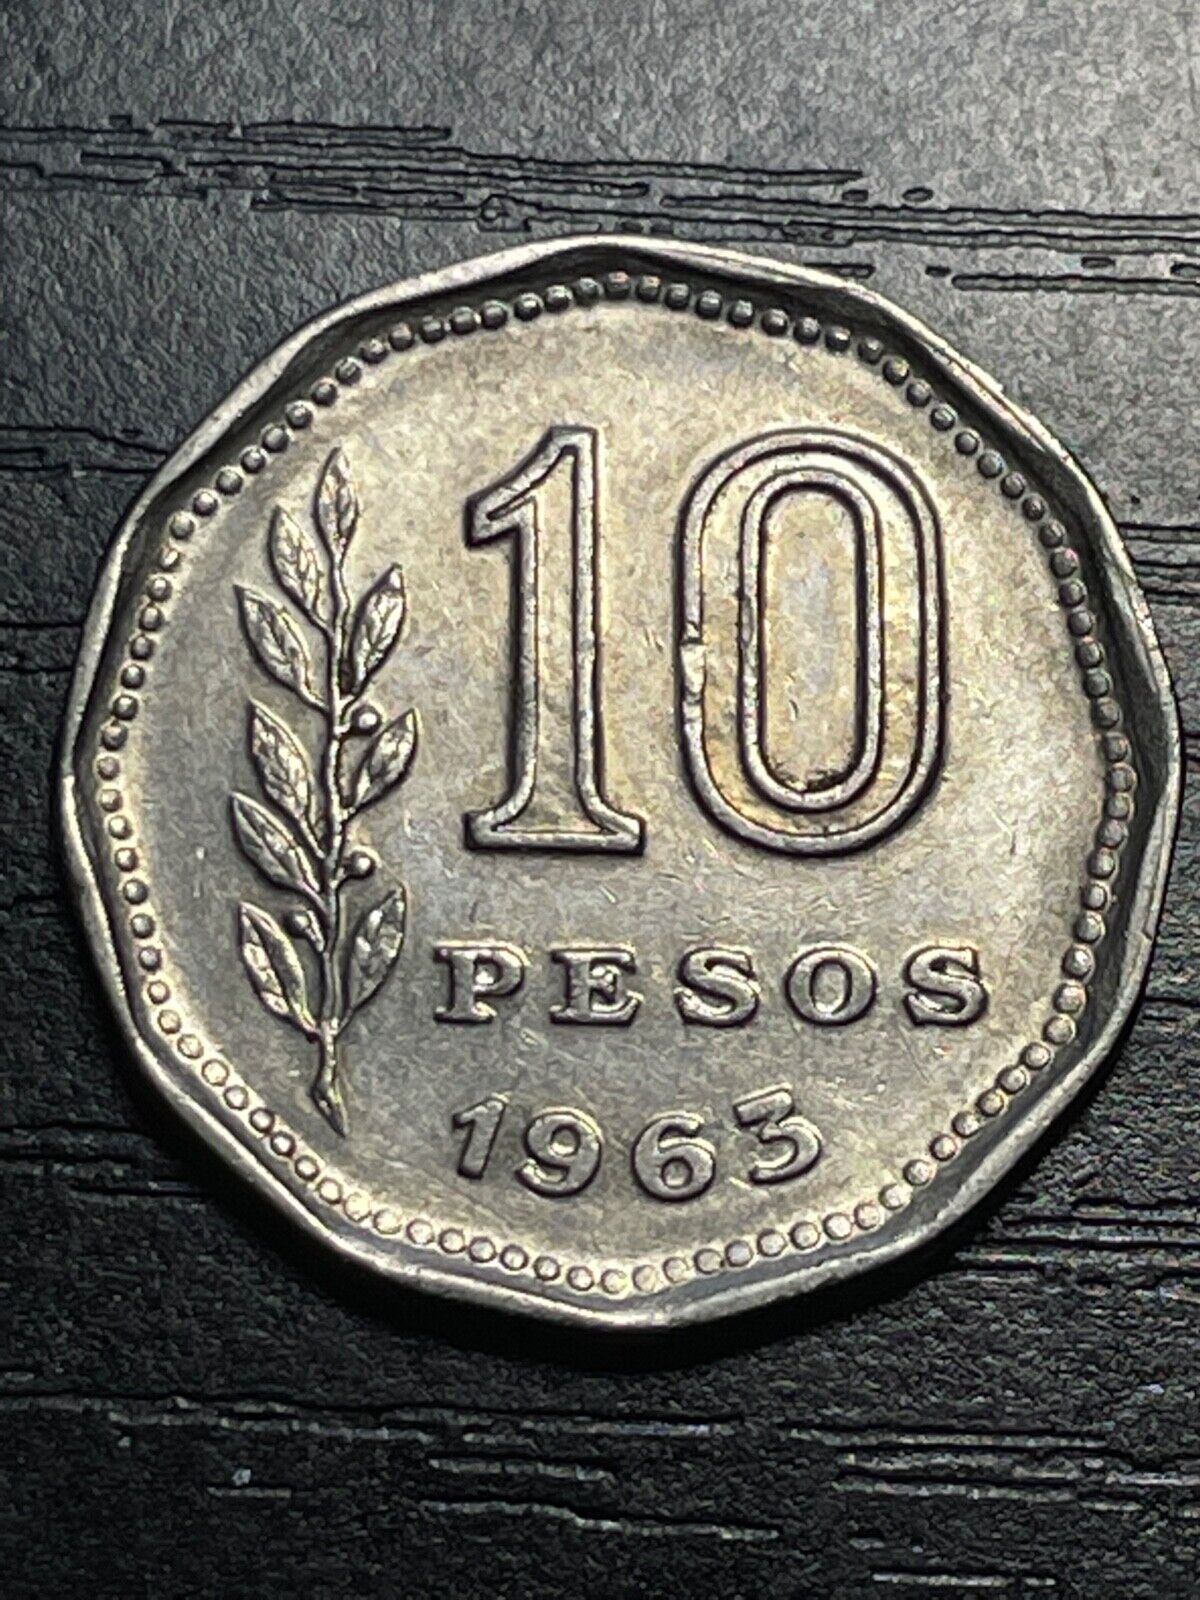 Argentina 10 Pesos 1963 Nickel Clad Steel Coin